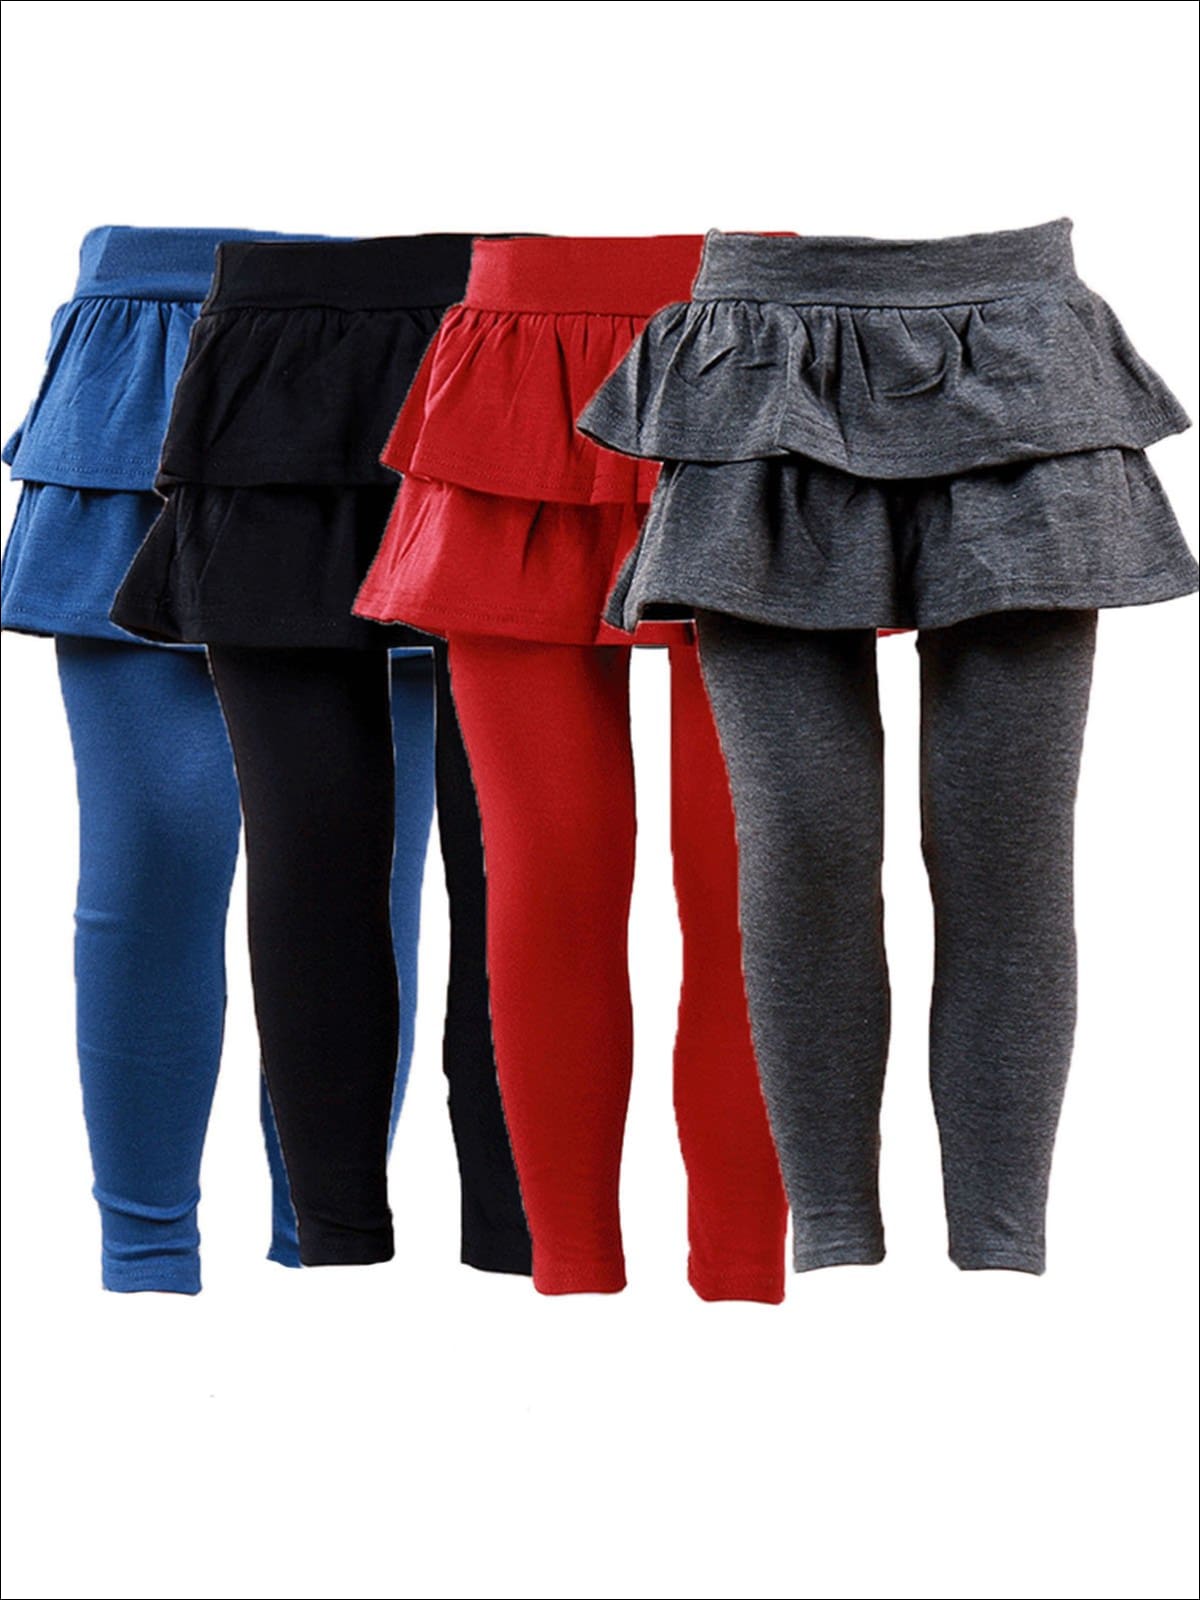 21 Types of Skirted Leggings Designs for Women and Girls